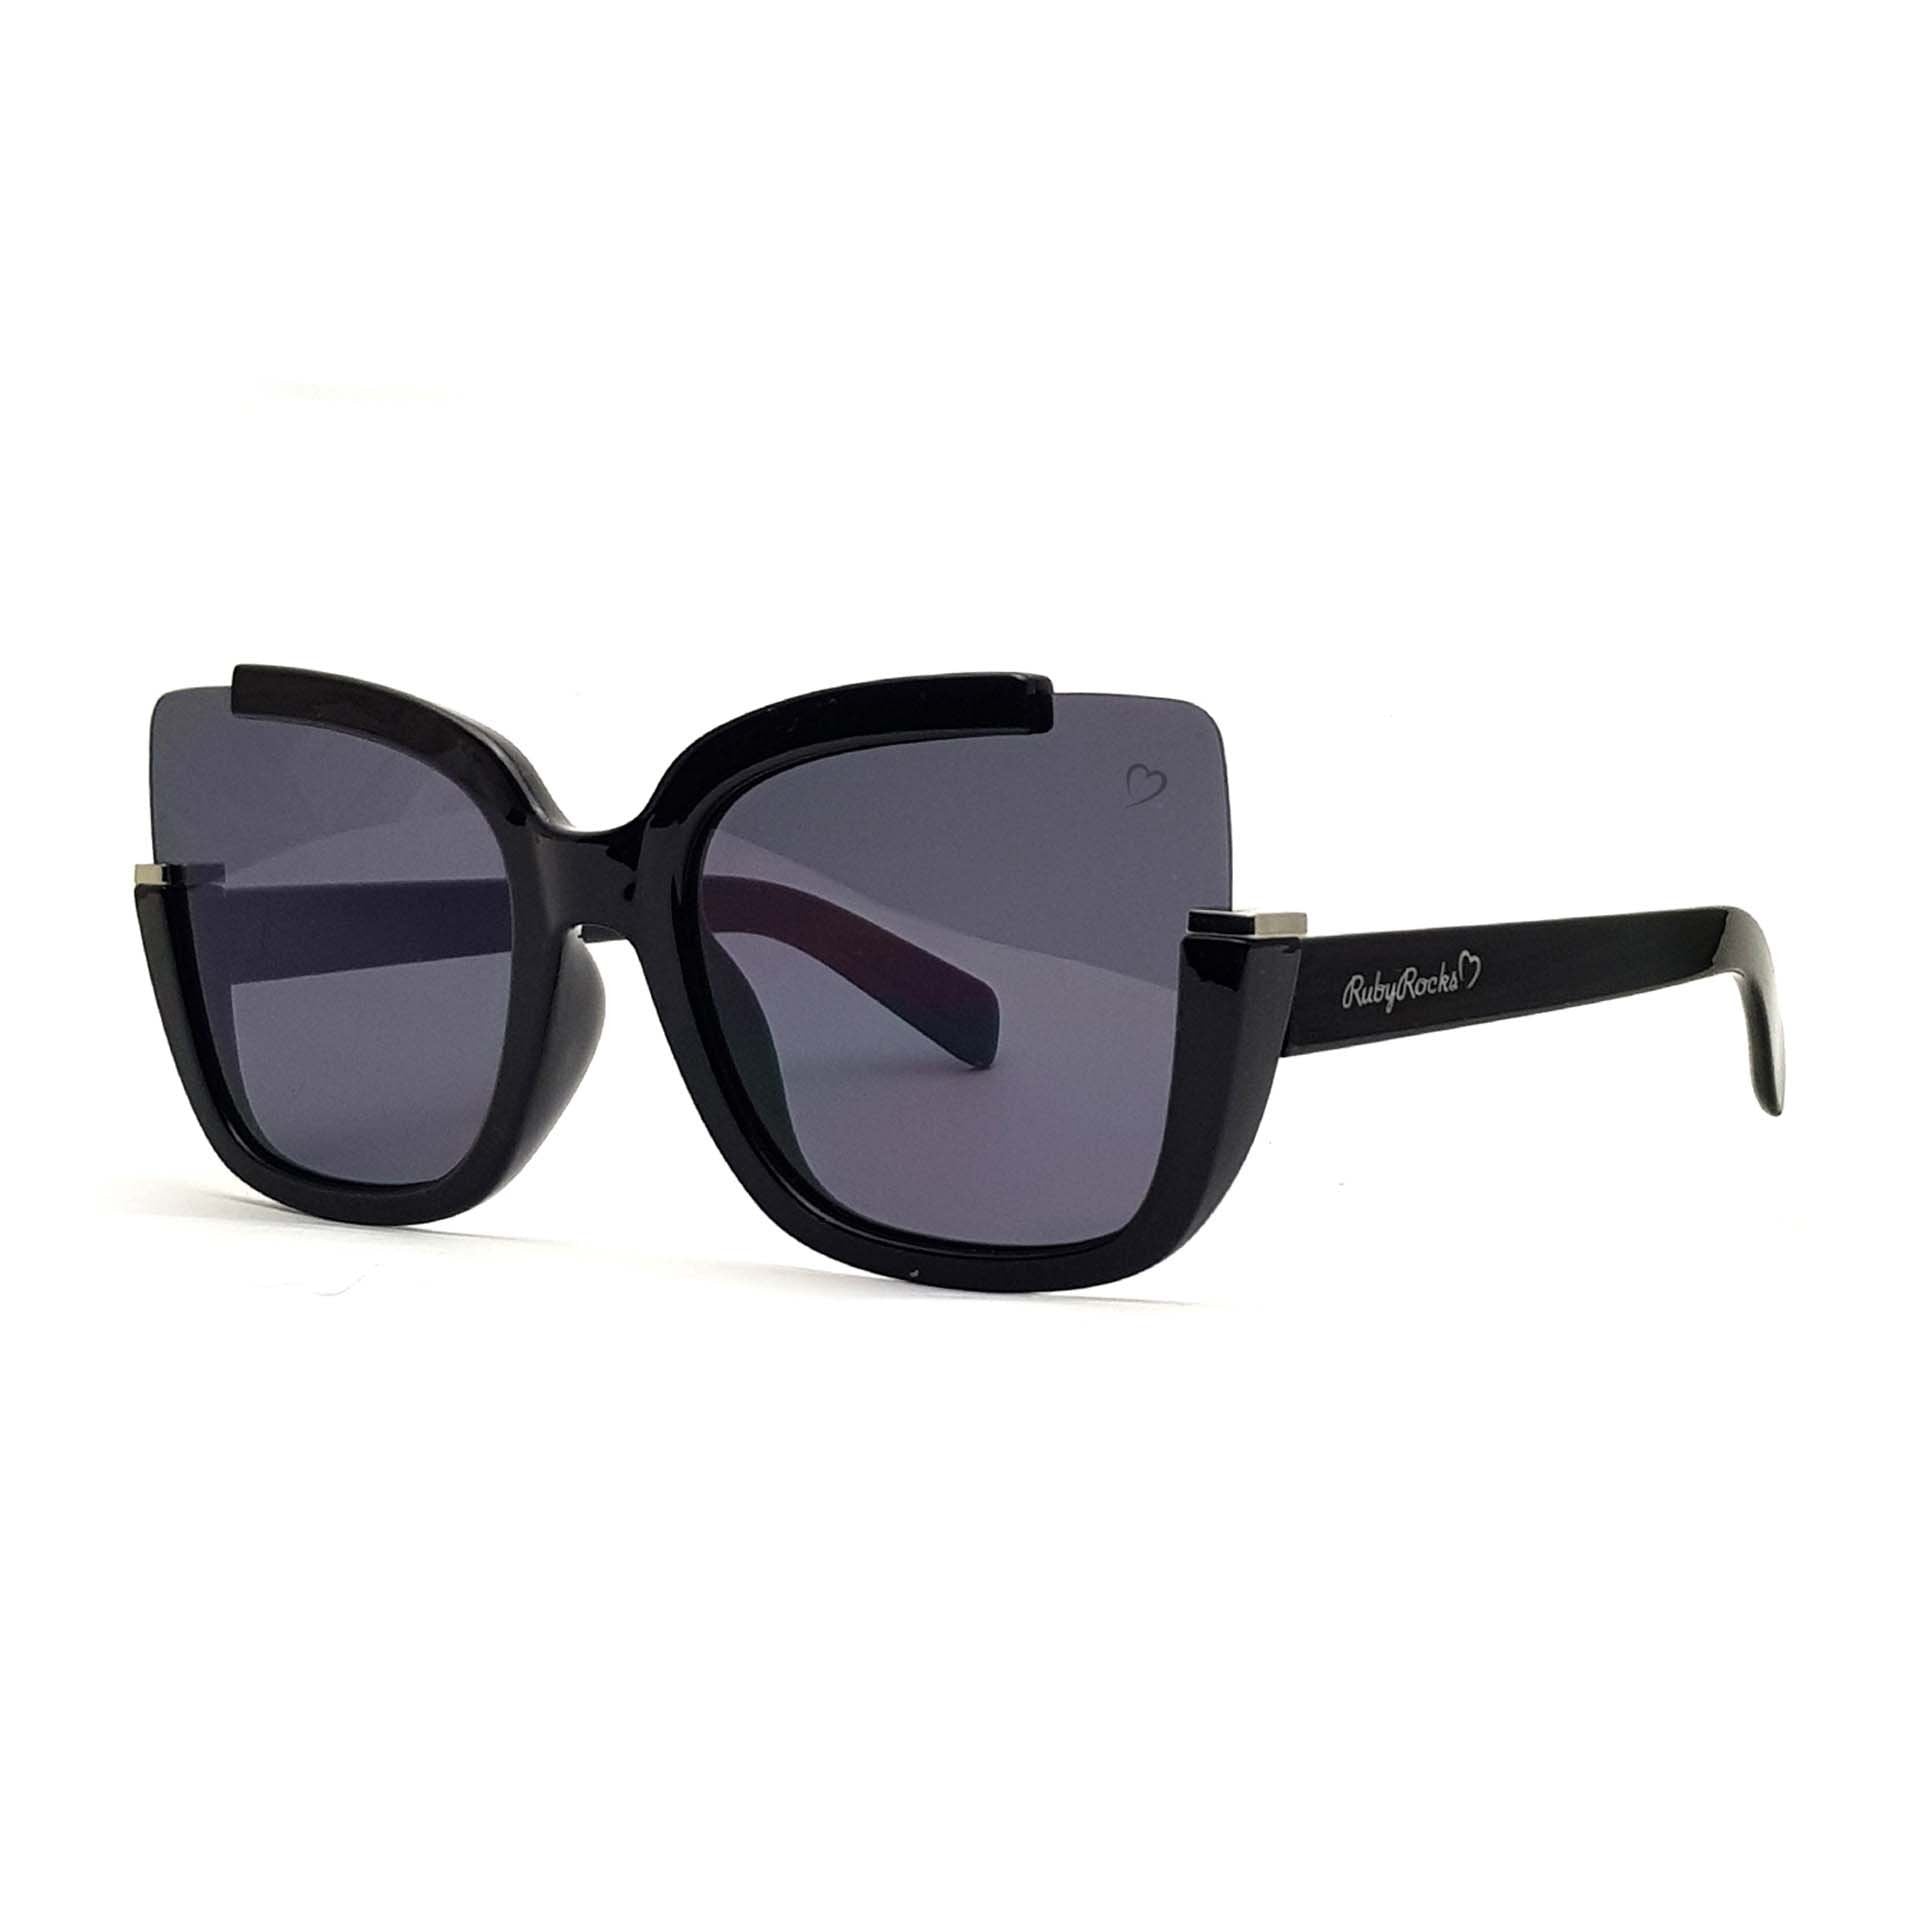 'Elizabeth' Square Sunglasses In Black